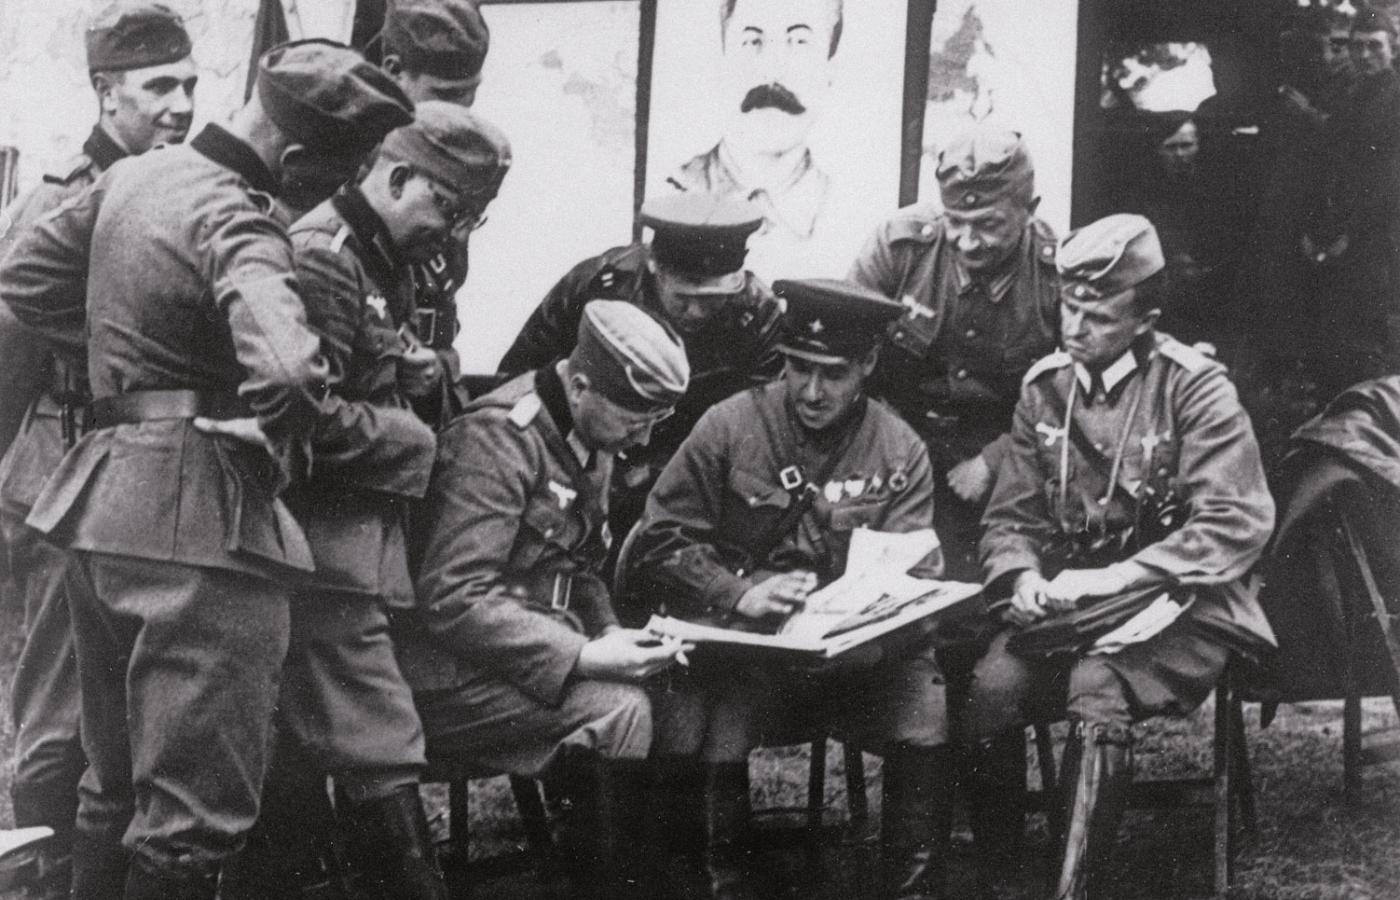 Towarzysze broni po zajęciu Polski. Niemieccy oficerowie podejmowani w sowieckim pułku pancernym przez gen. Siemiona Kriwoszeina, gdzieś na wschód od Brześcia Litewskiego, 20 września 1939 r.